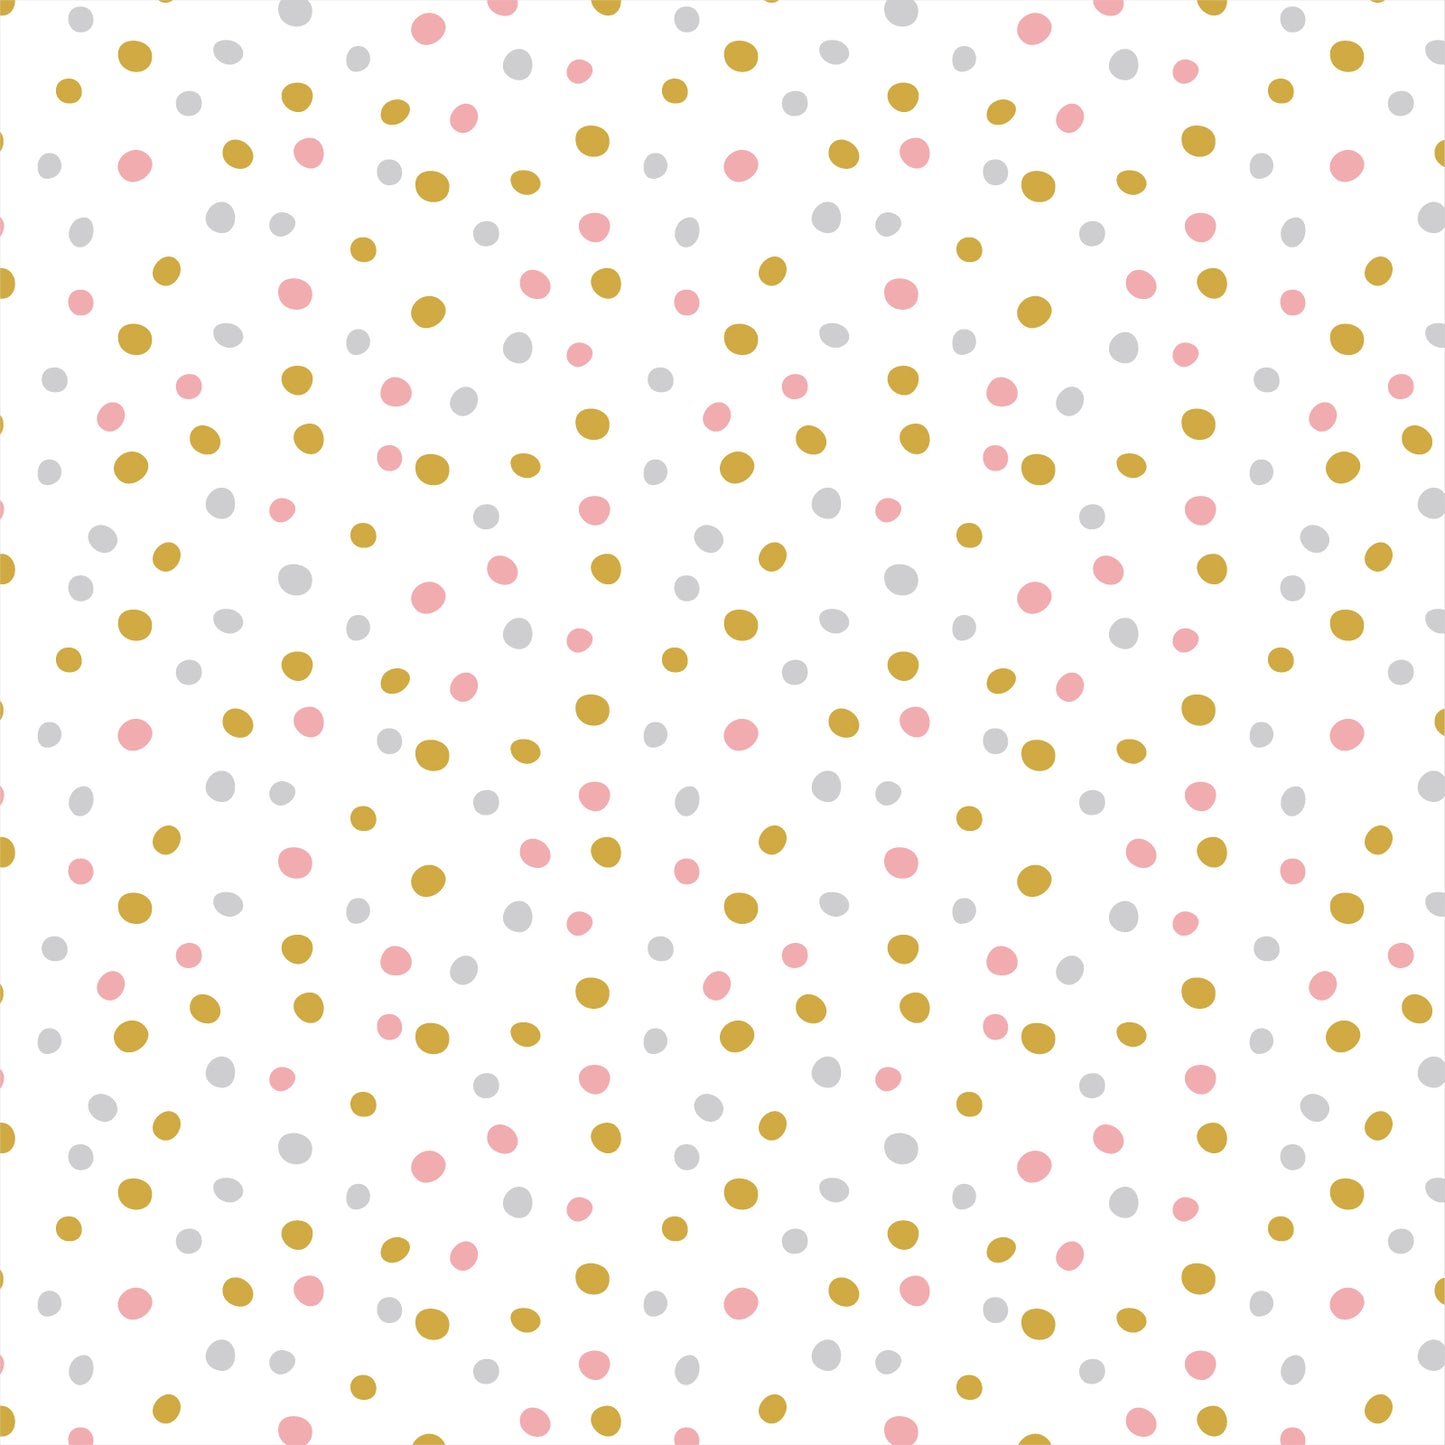 Confetti - Pink & Gold - Organic Cotton Flannel